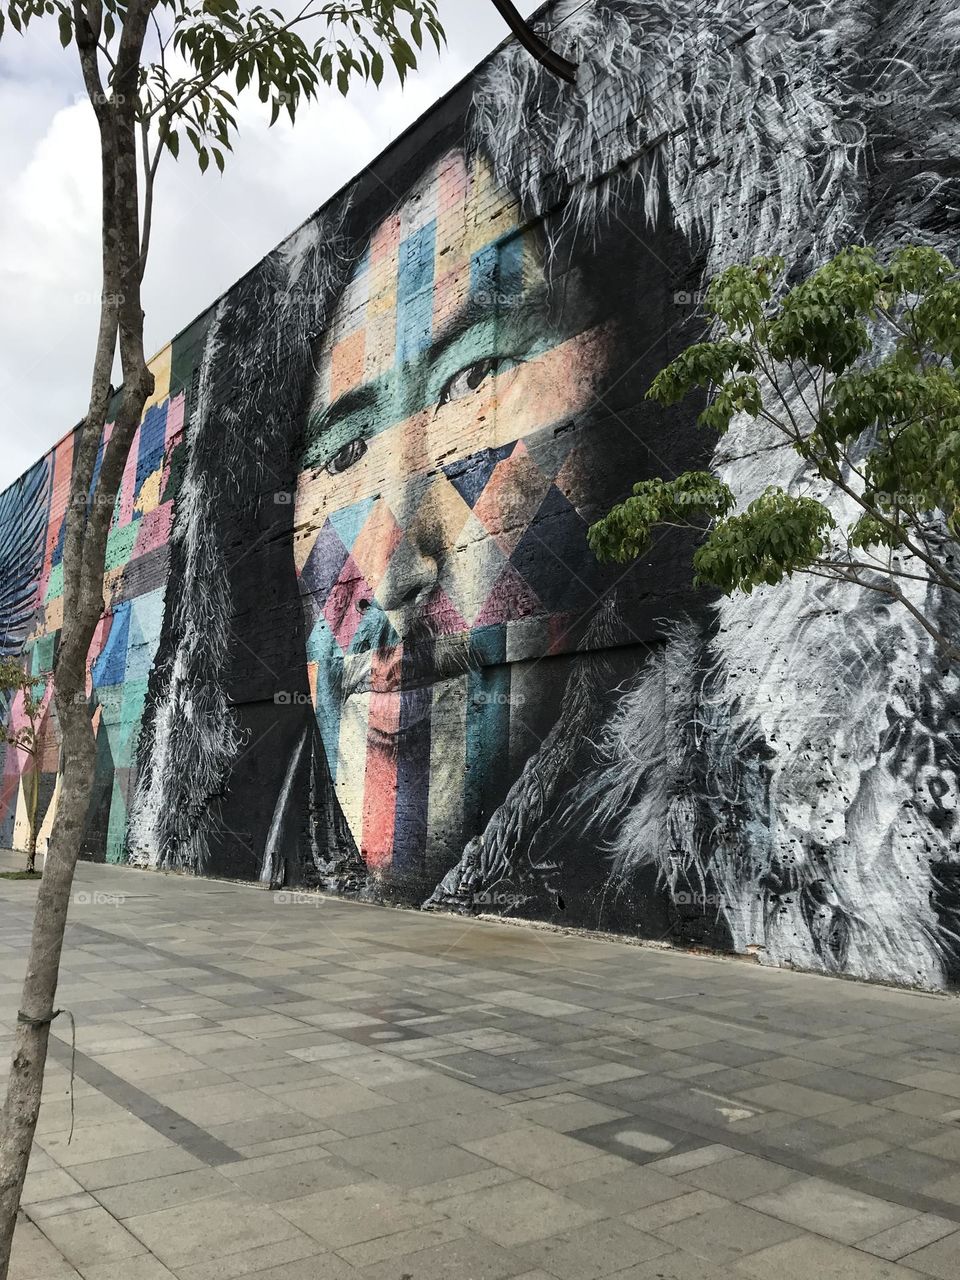 Porto maravilha. Arte urbana. Rio de Janeiro. Brasil 